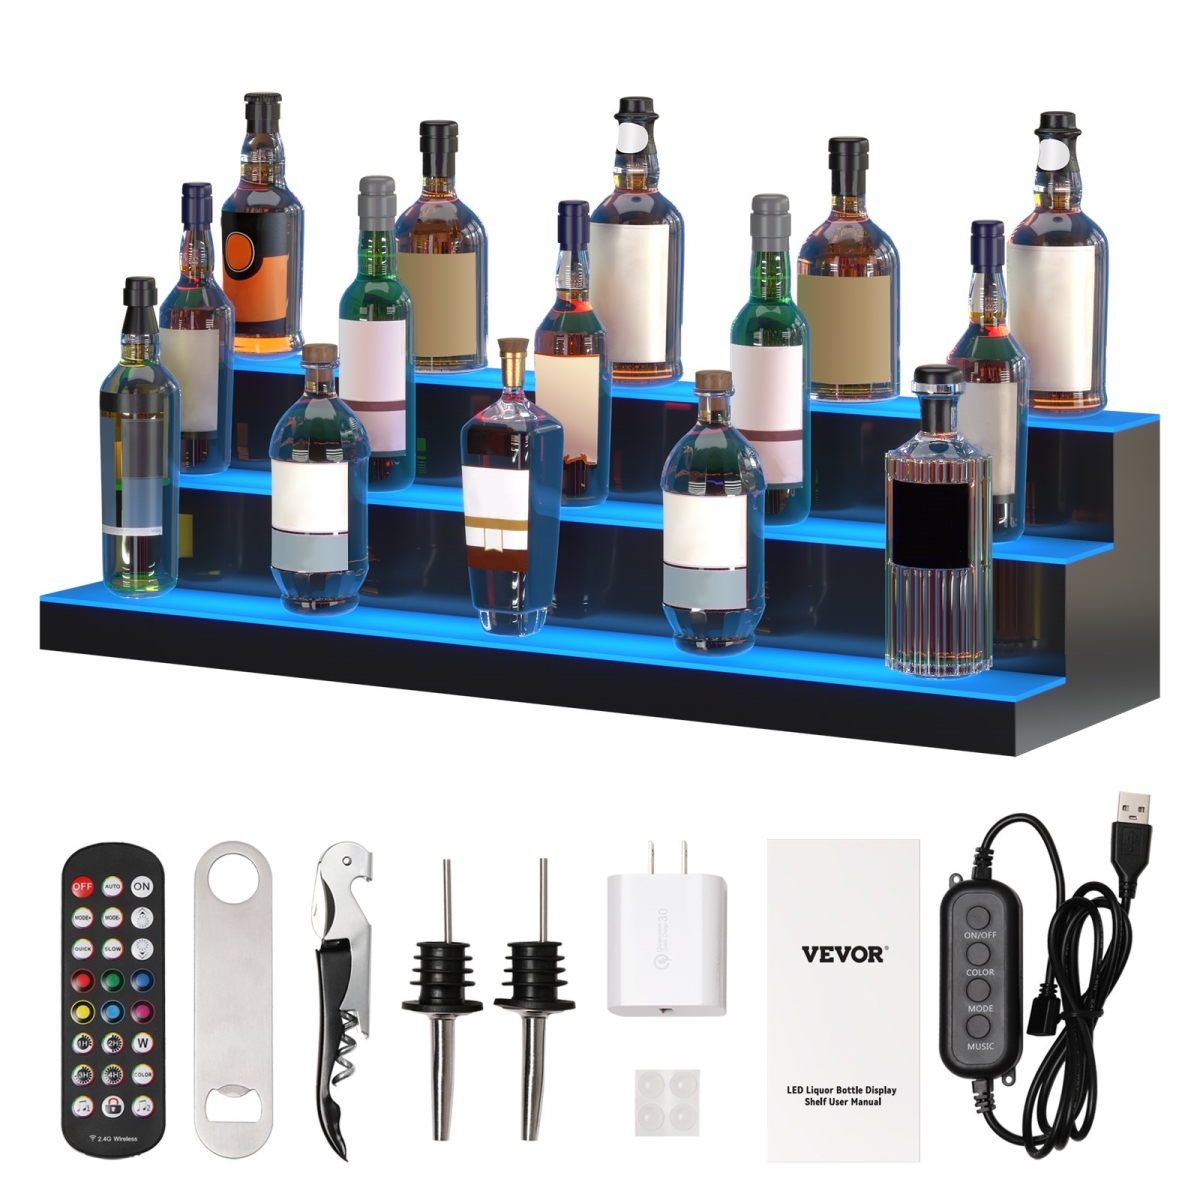 Picture of Vevor ZTXJPLED340RFAVHOV1 40 in. 3 Tiers LED Lighted Liquor Bottle Display Shelf for Holding 30 Bottles